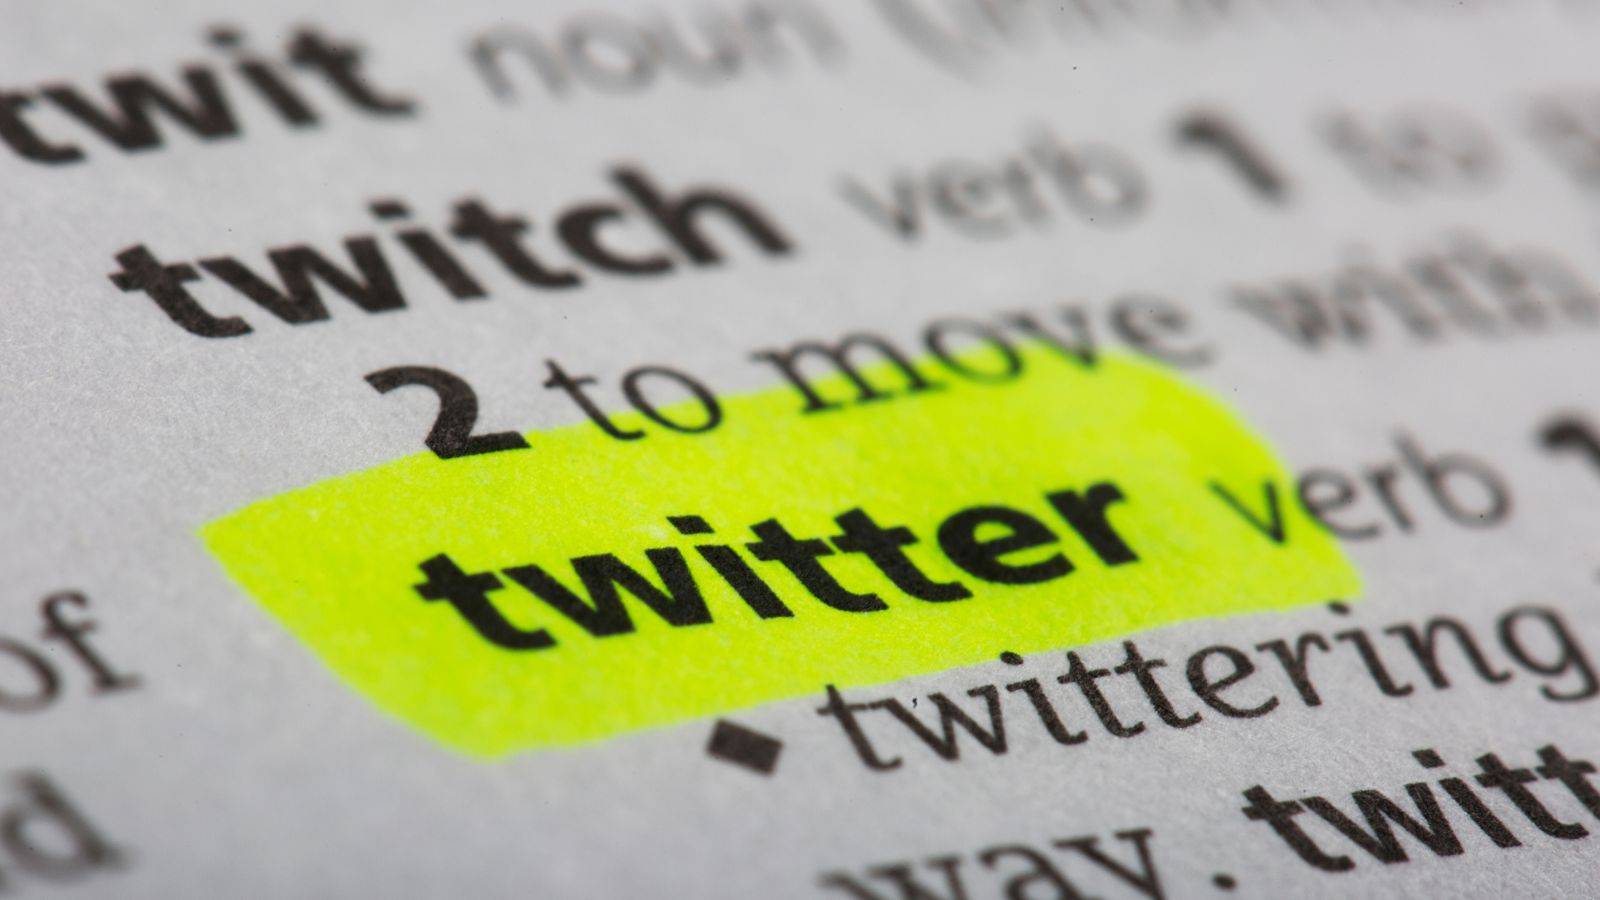 Mudanças no Twitter: conheça as estratégias e objetivos das novidades